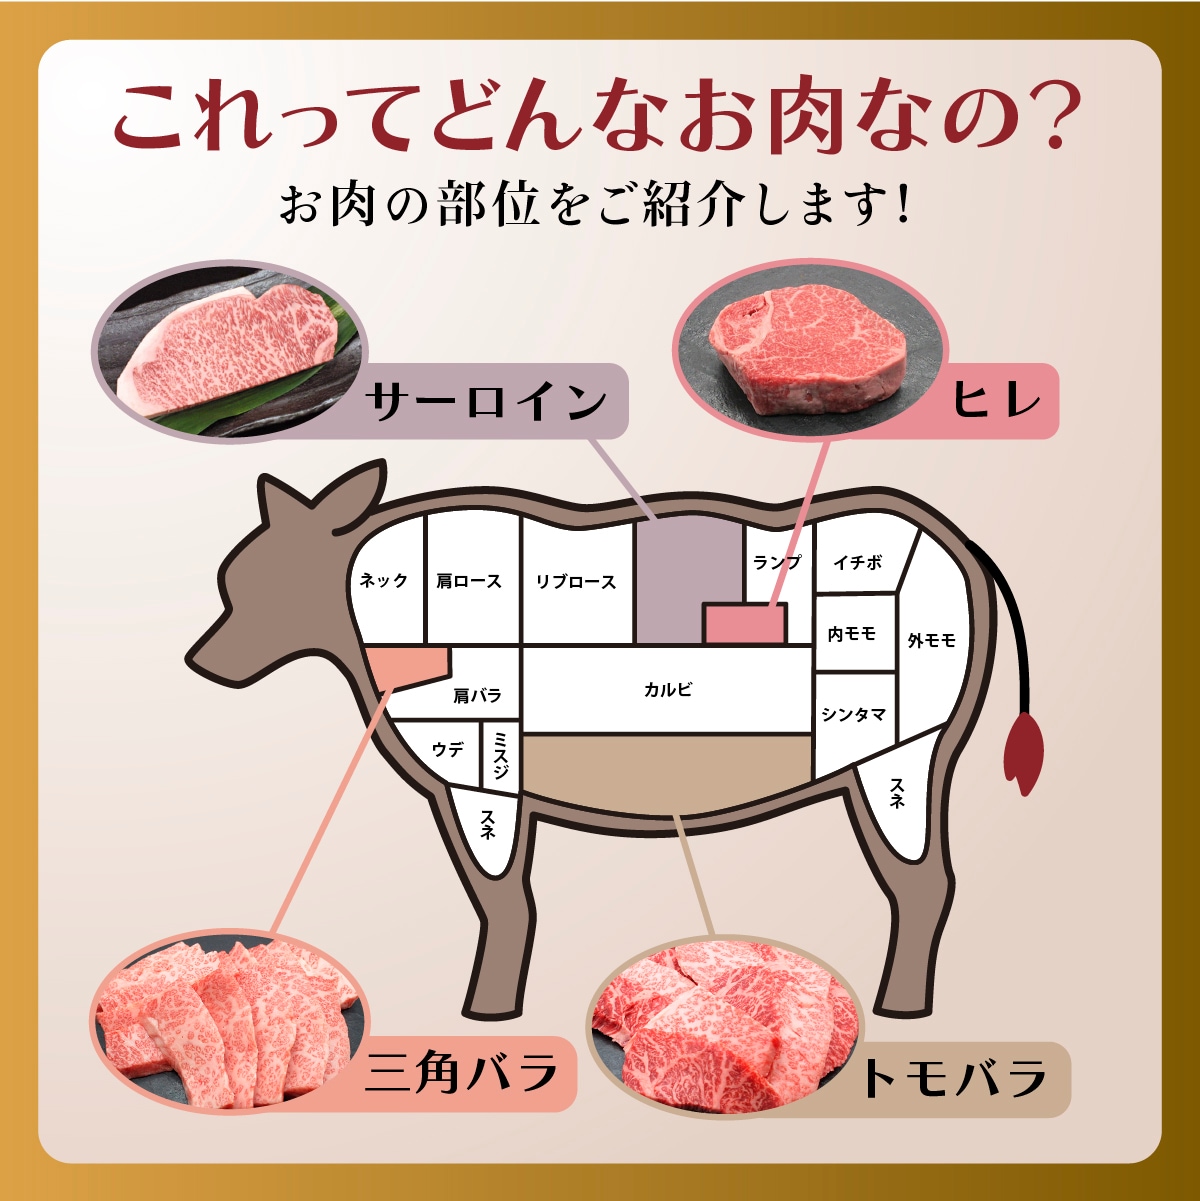 お肉の部位をご紹介します